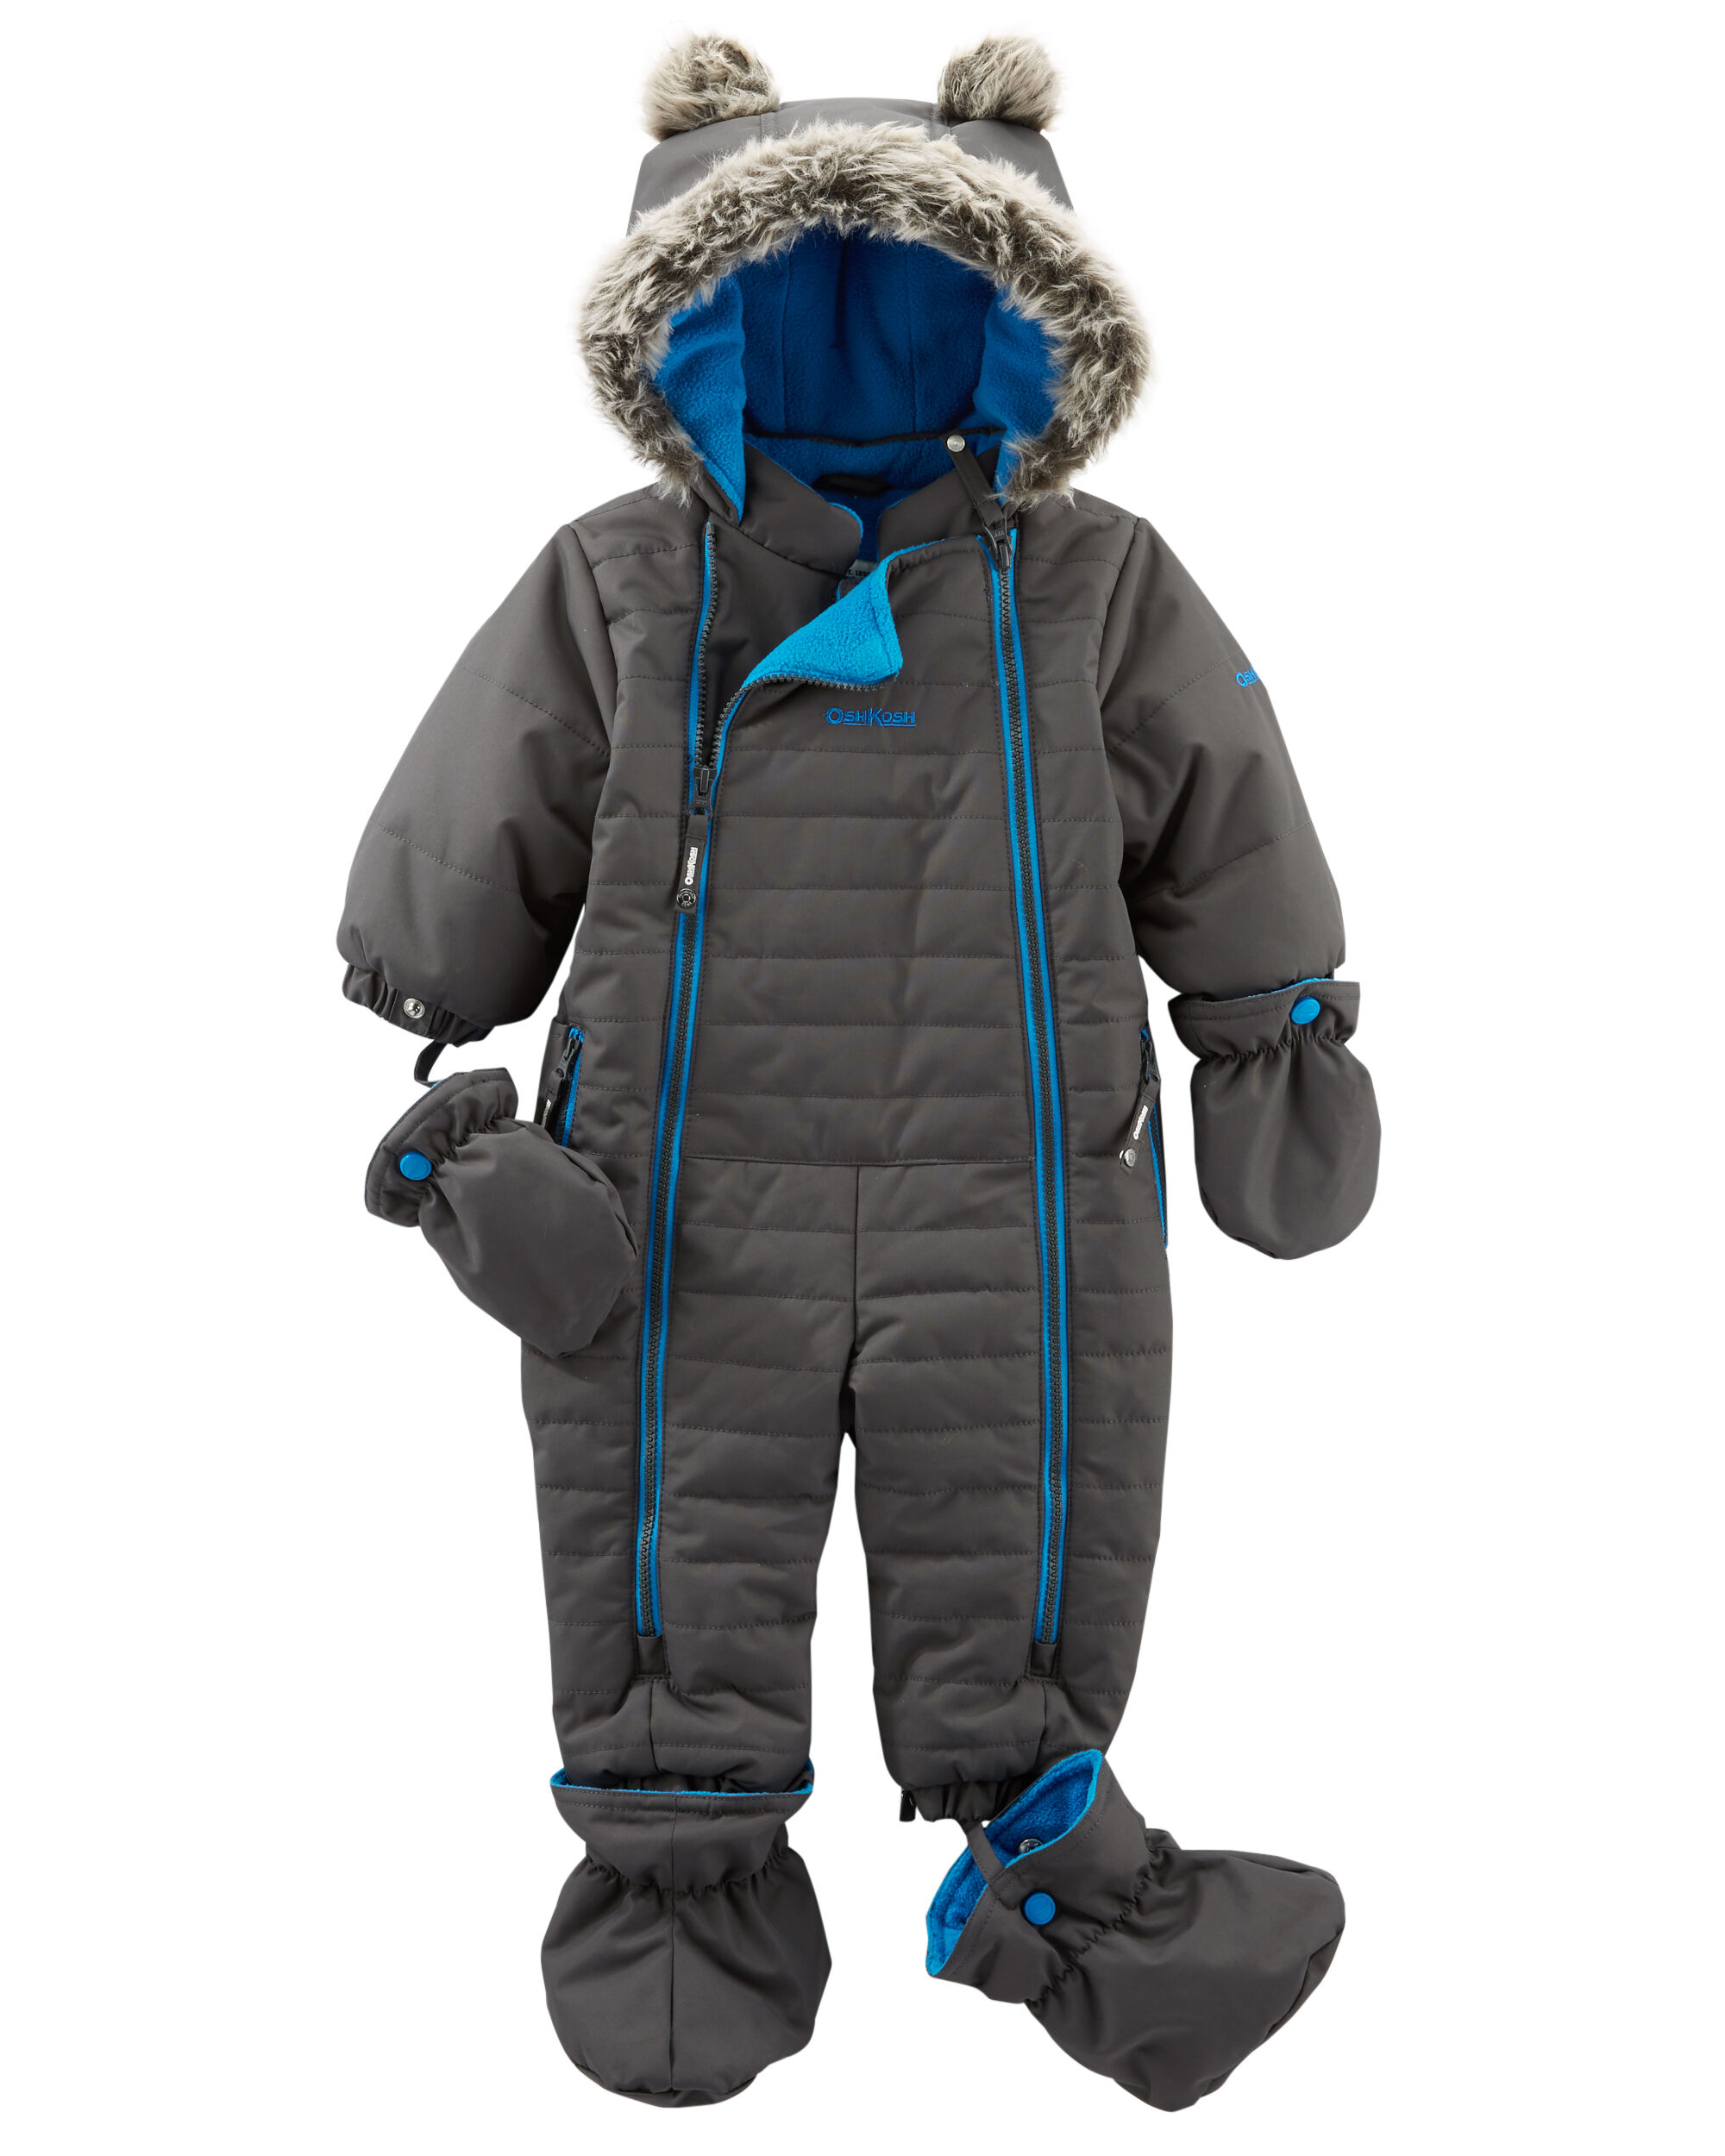 Infant 1-Piece Snowsuit | carters.com